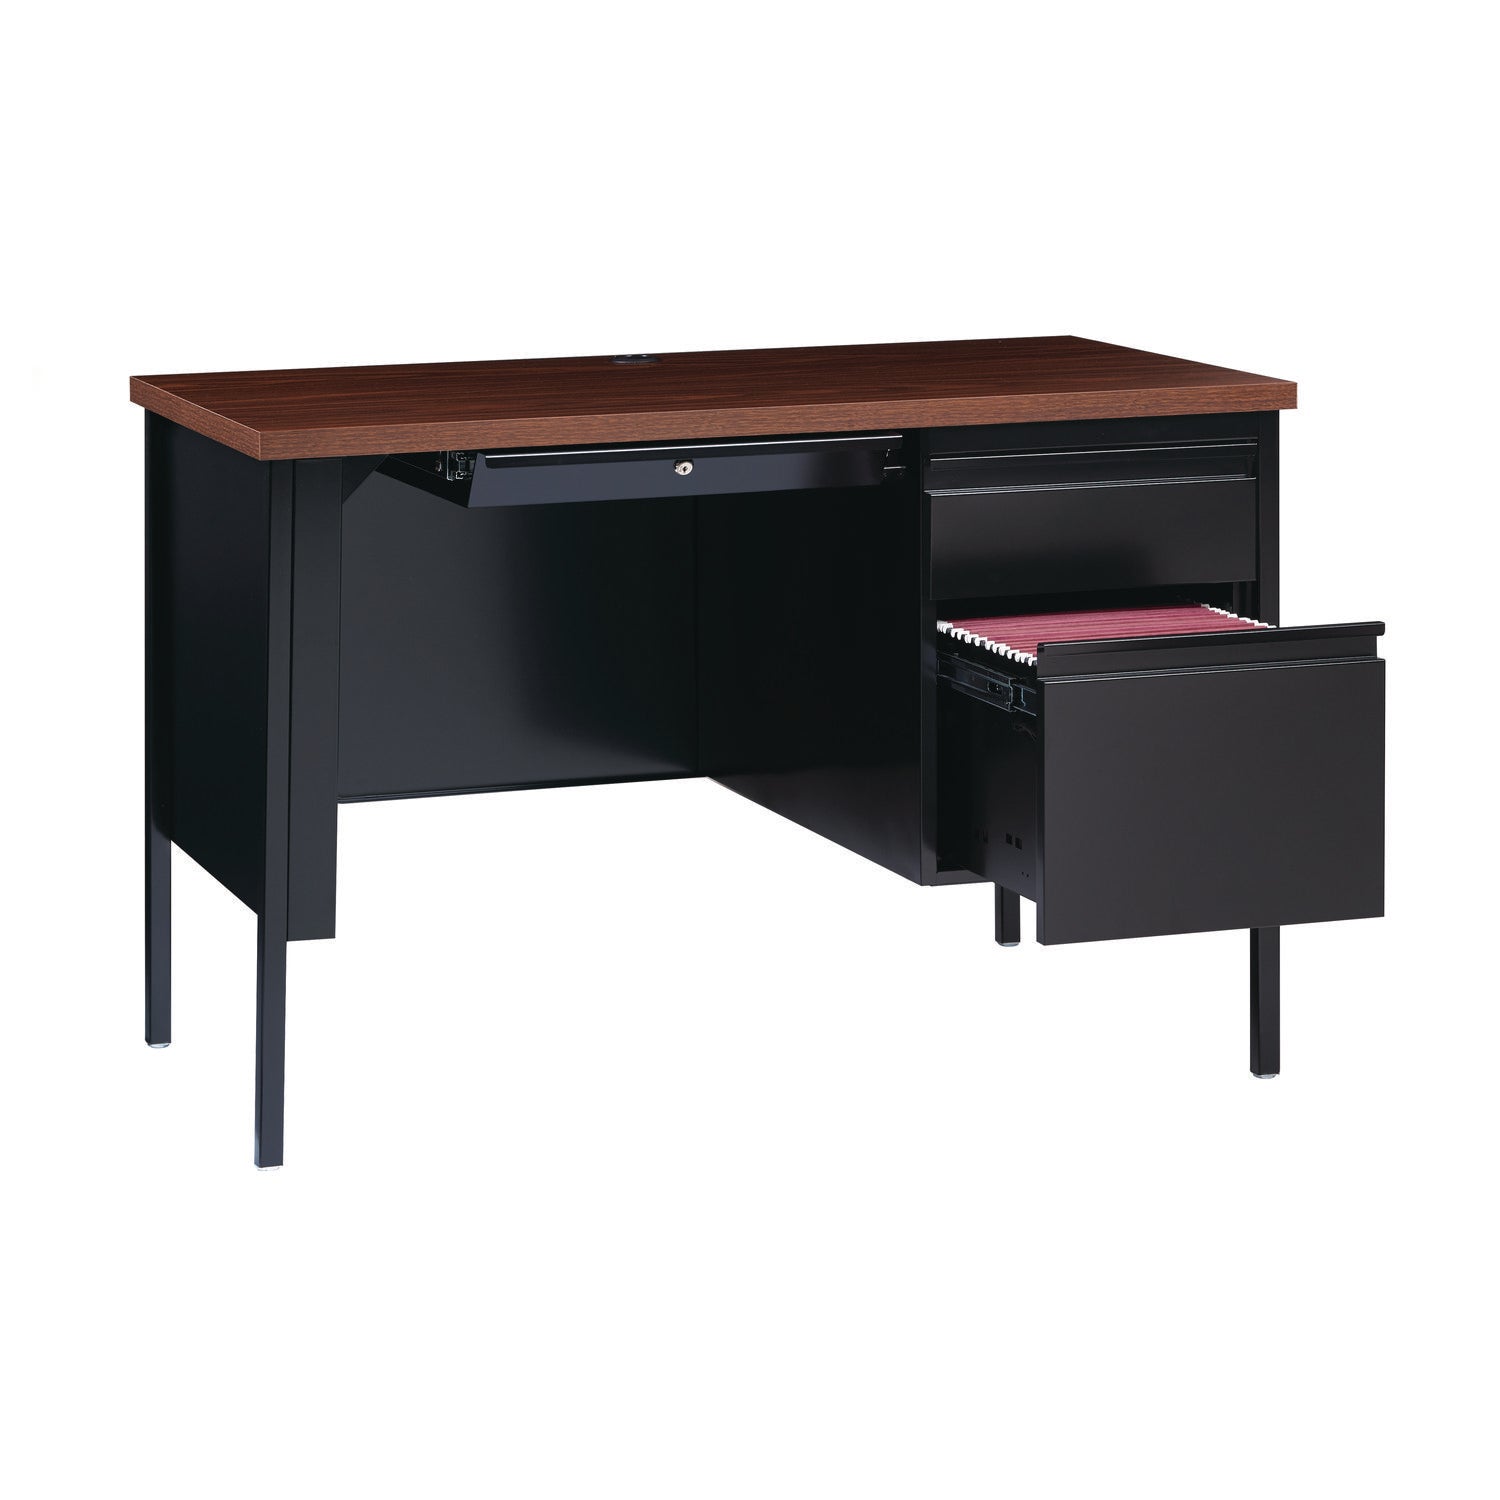 single-pedestal-steel-desk-455-x-24-x-295-mocha-black-black-legs_alehsd4524bm - 5